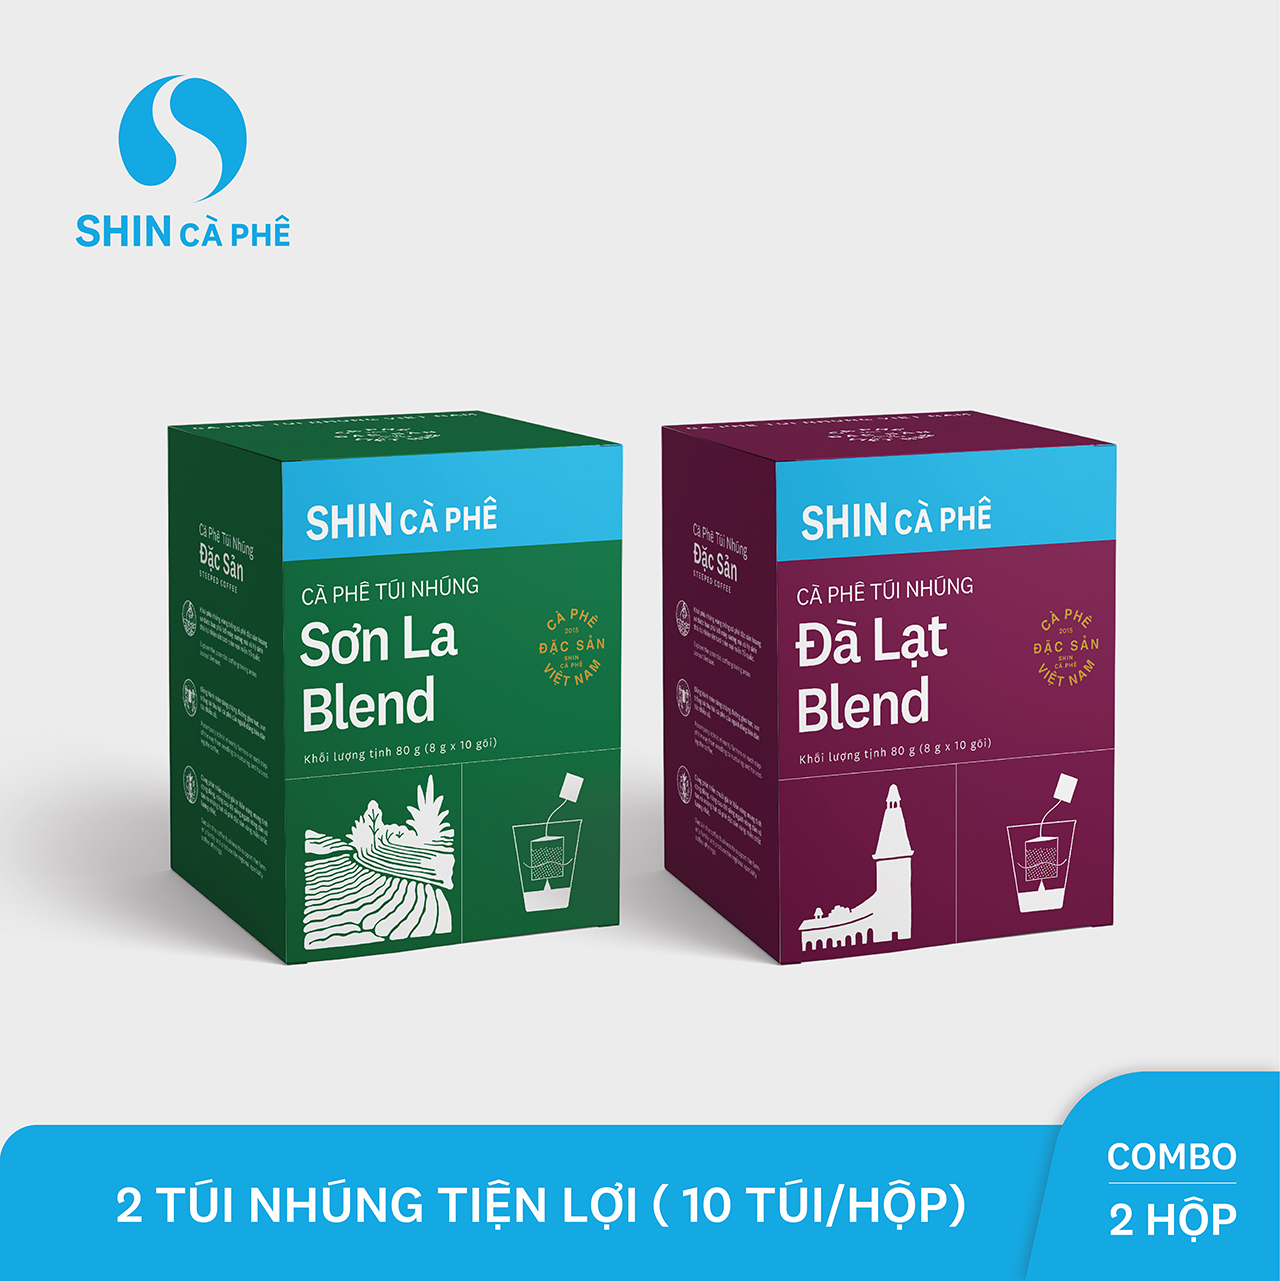 SHIN Cà Phê - Combo túi nhúng Sơn La và Đà Lạt - Hộp 10 gói